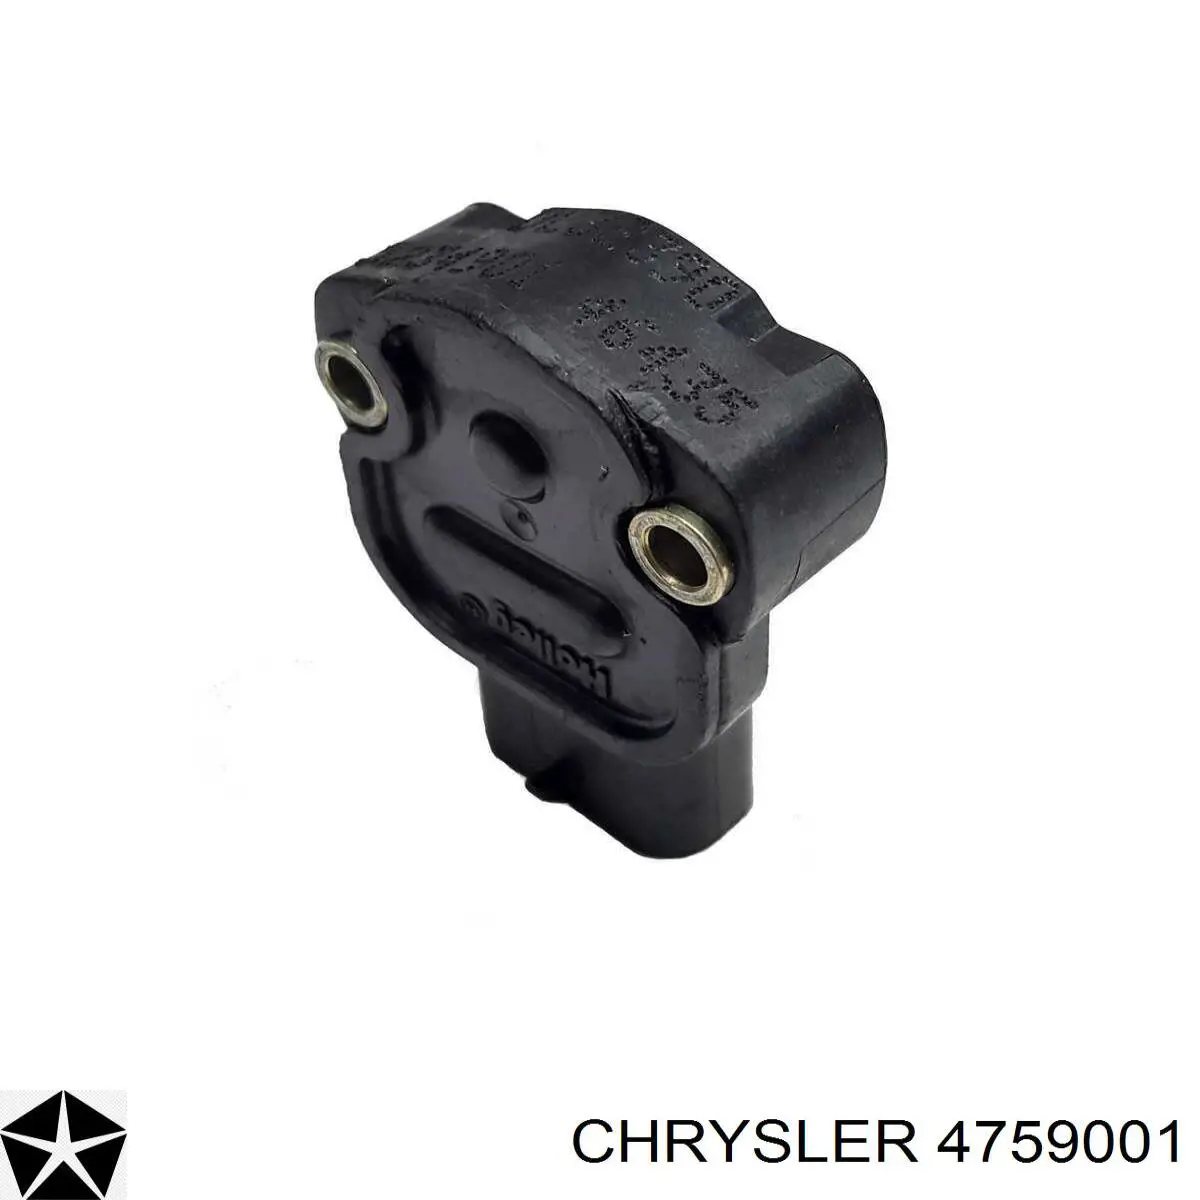 4759001 Chrysler sensor tps